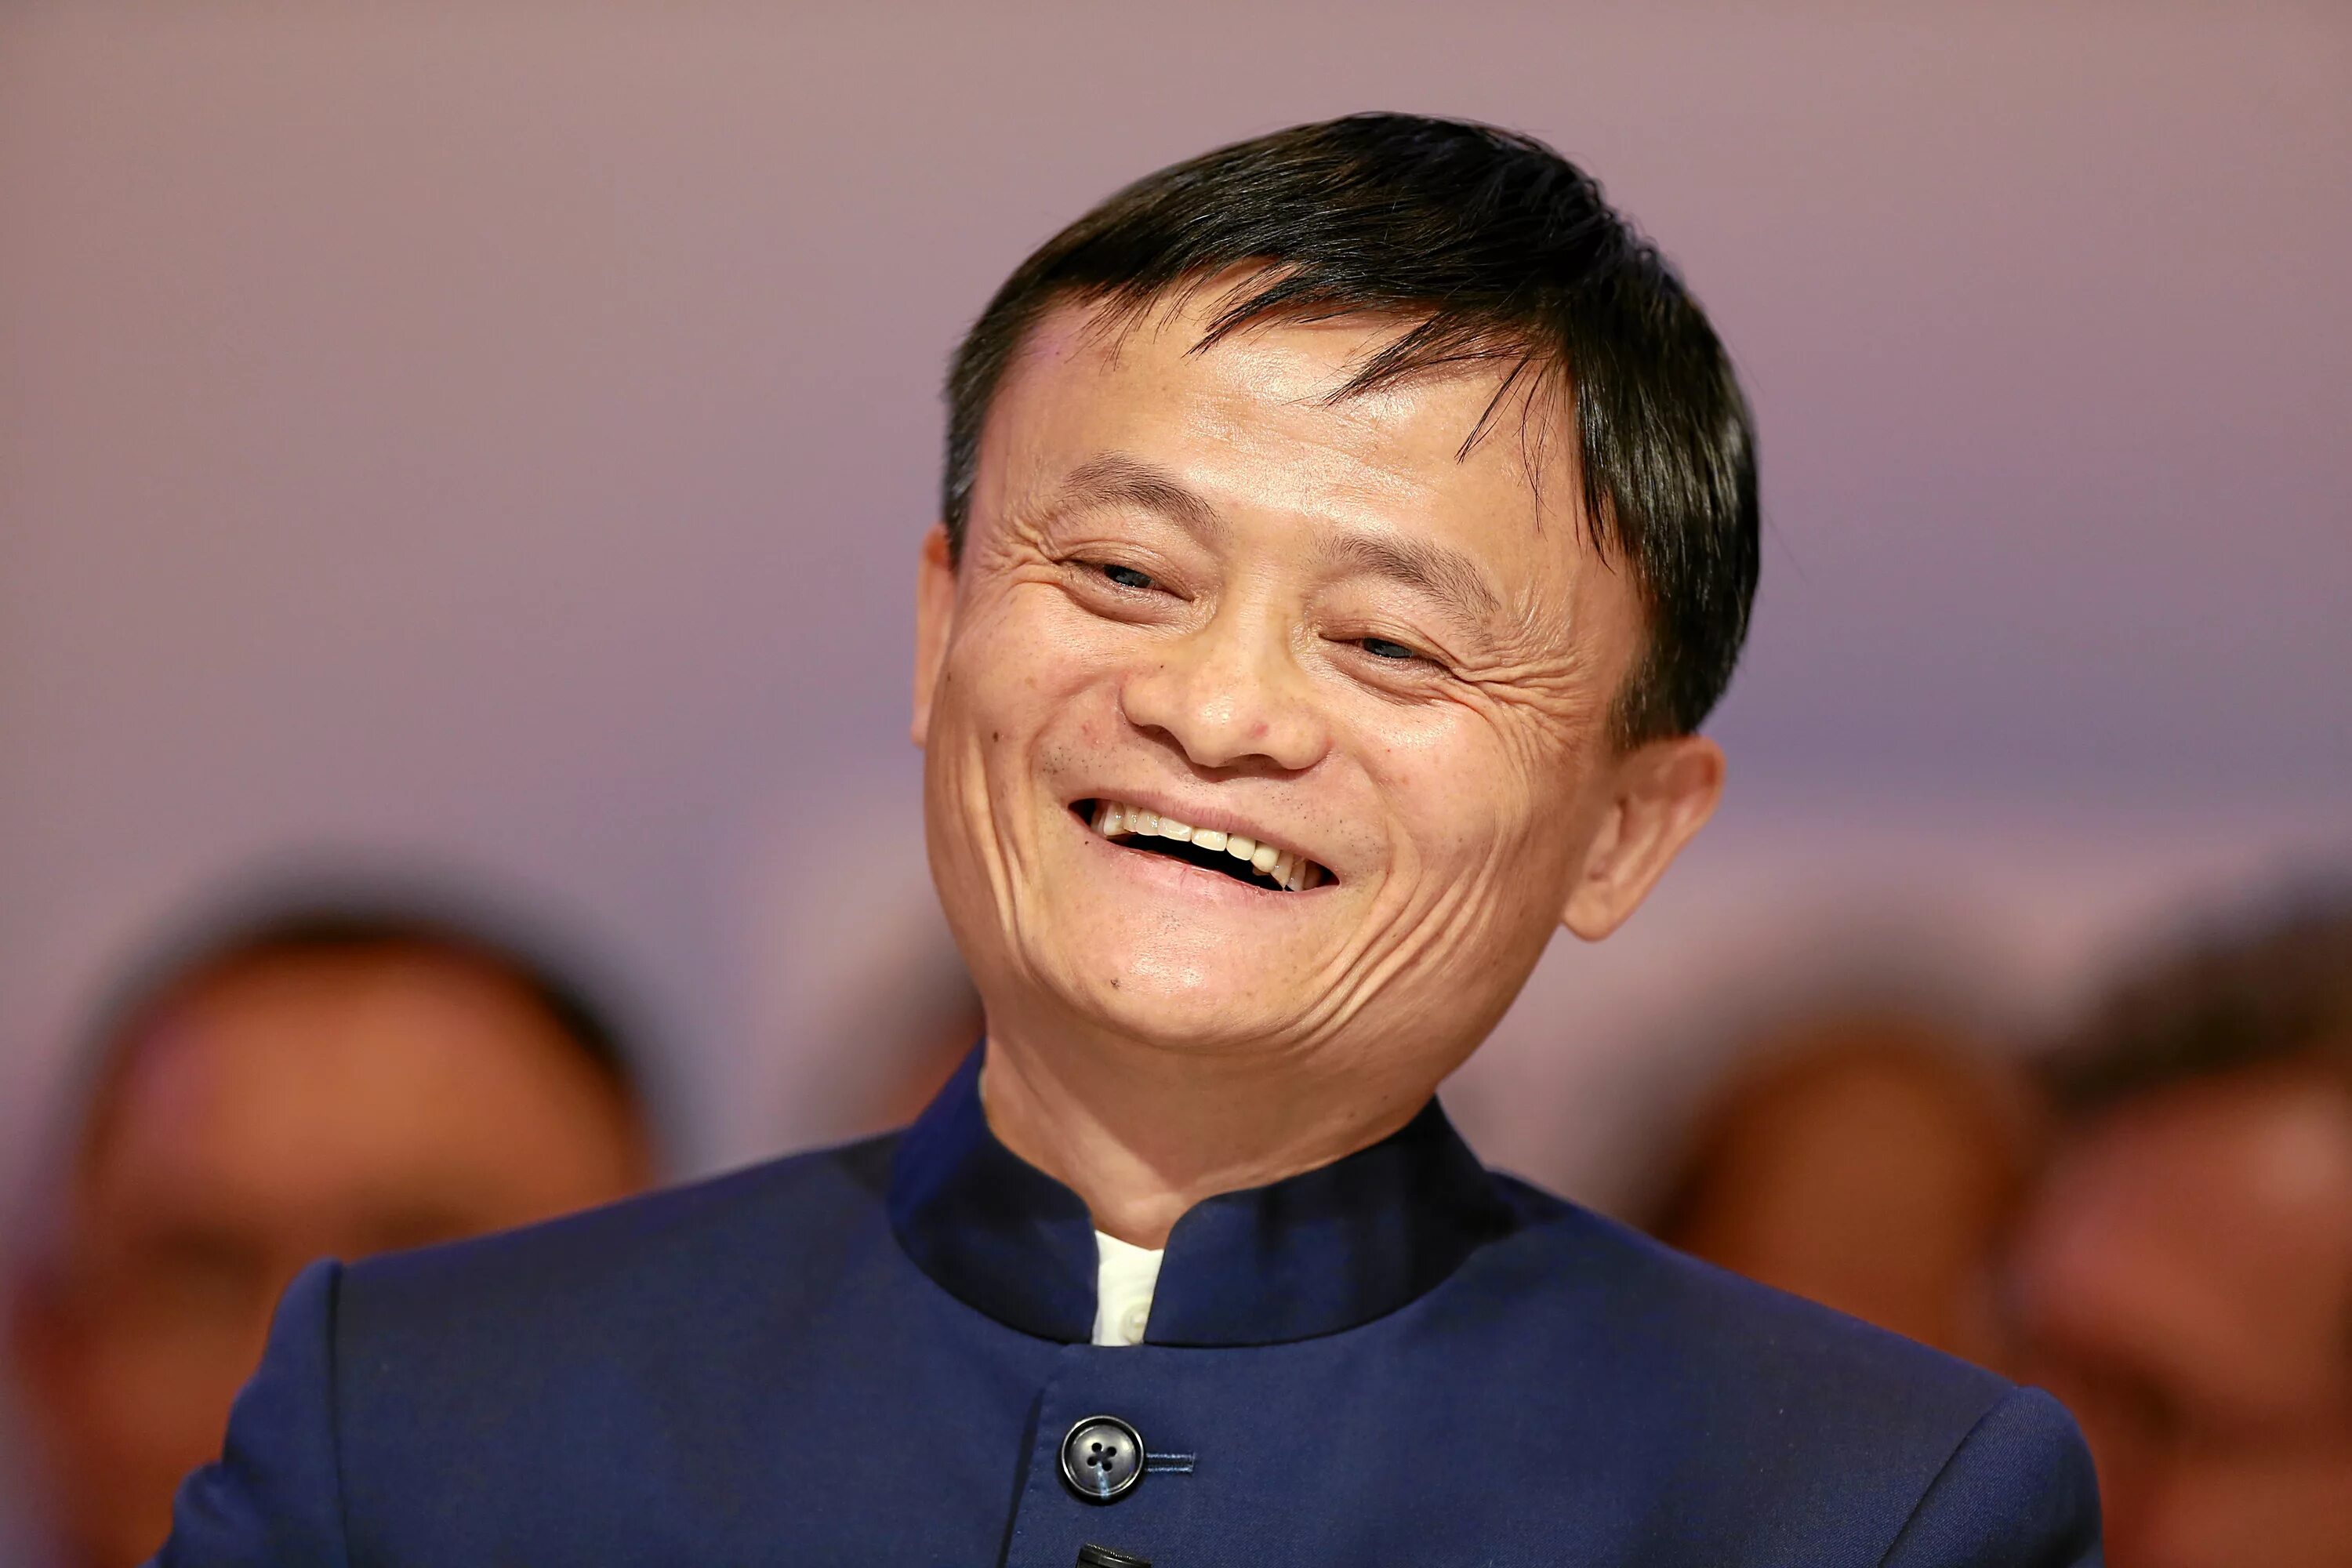 Русские узкоглазые. Димаш и Джек ма. Соучредитель Alibaba Group, китайский миллиардер Джек ма. Лицо китайца.